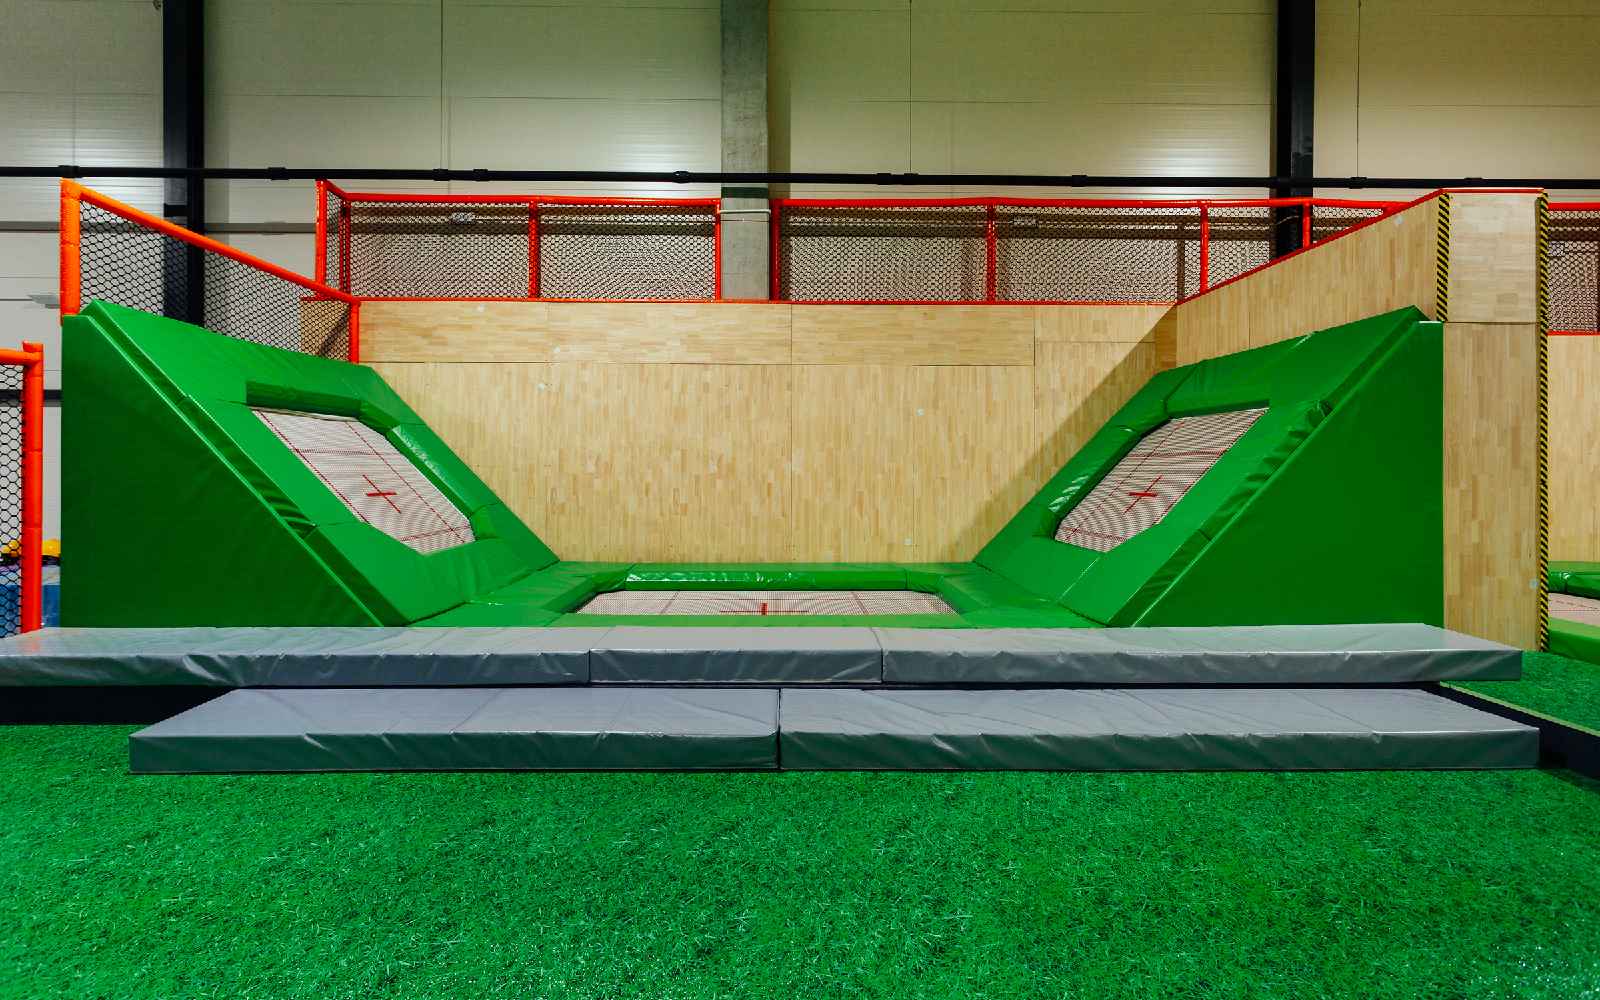 Zajęcia dla dzieci Park trampolin Jump Arena w Warszawie